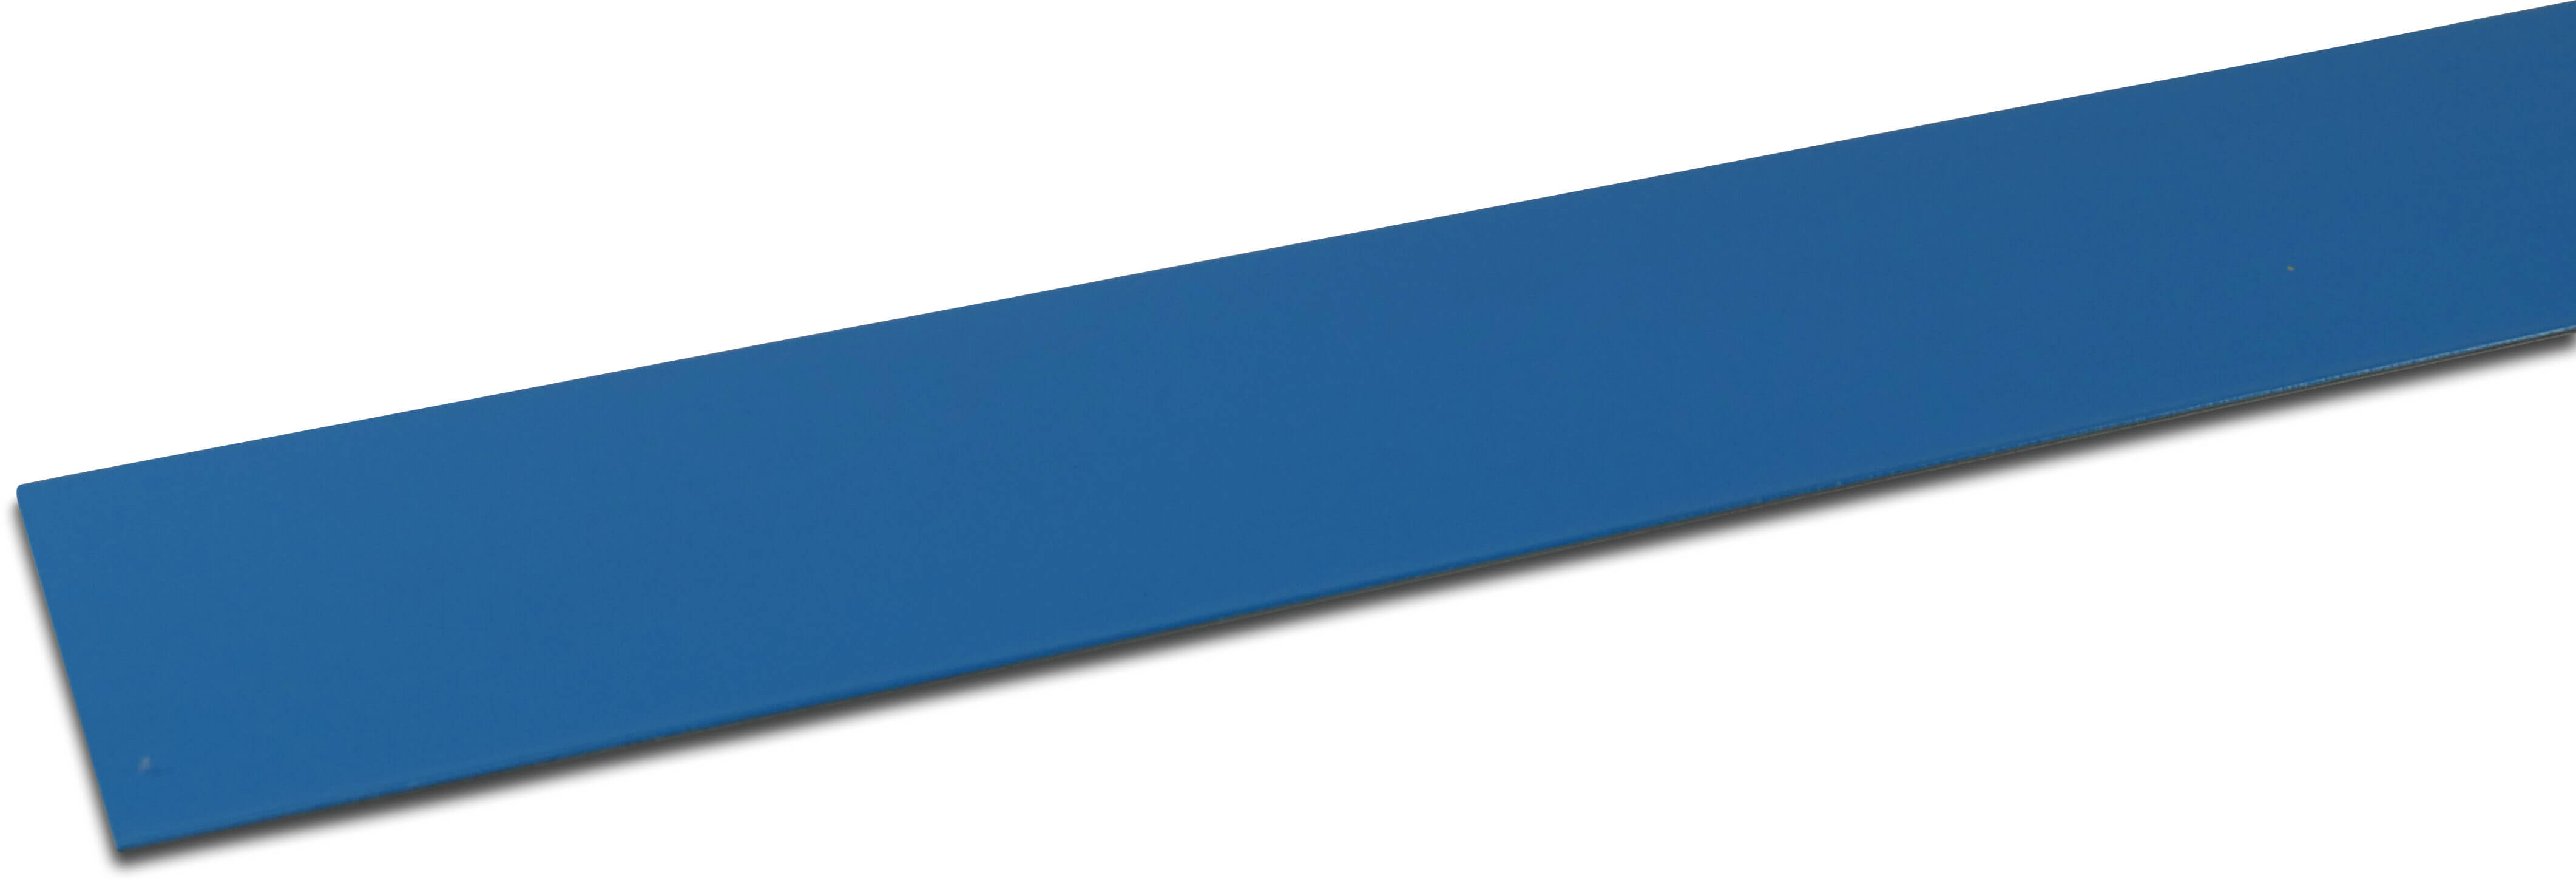 Elbe Profil PVC revêtue de métal 50 mm x 50 mm x 2000 mm bleu 2m type Angle intérieur